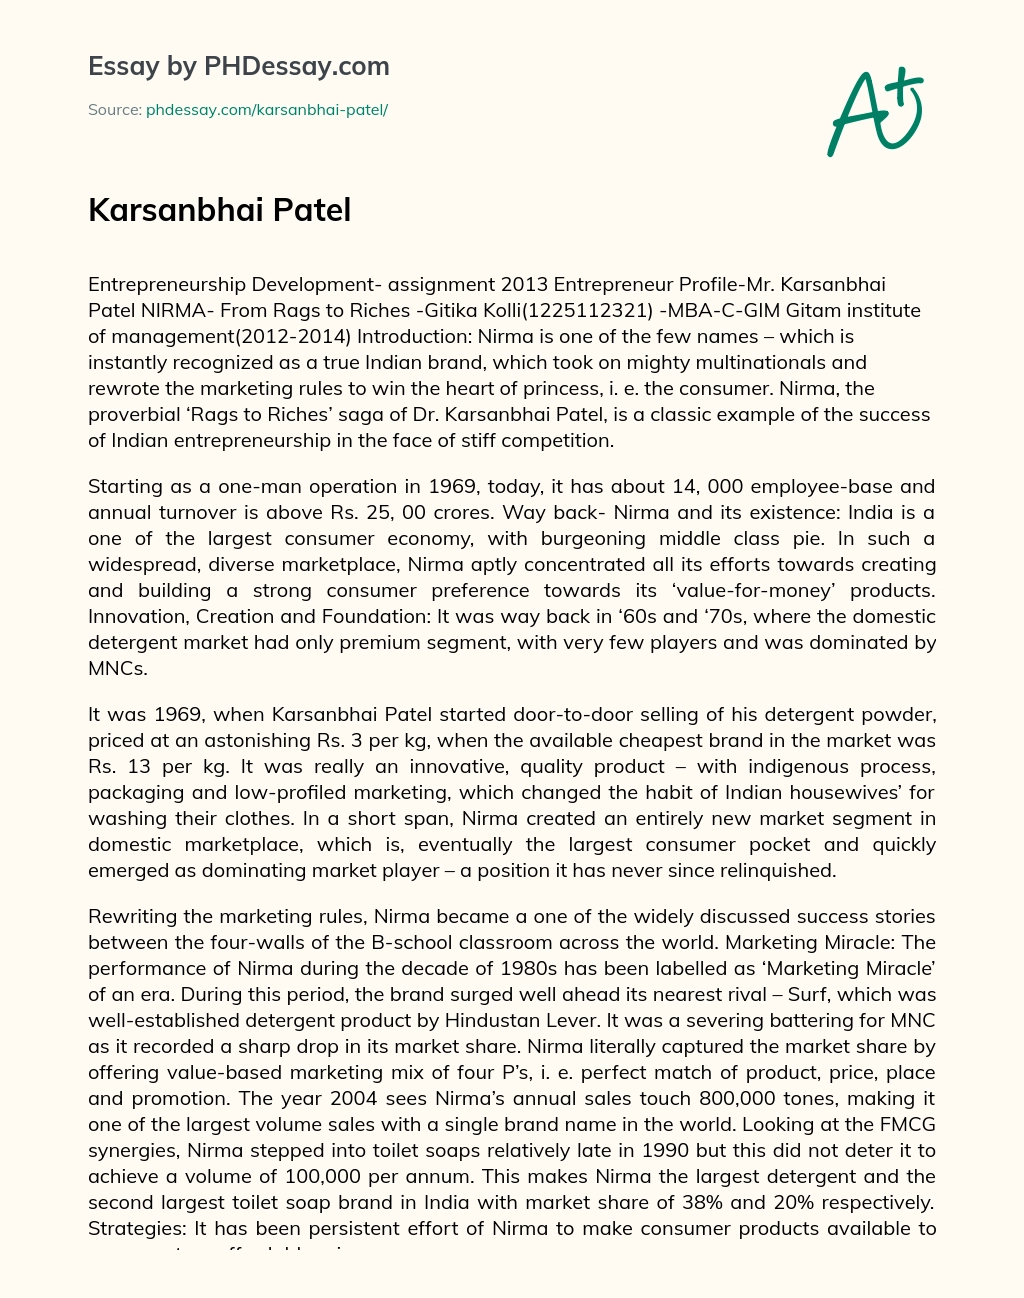 Karsanbhai Patel essay